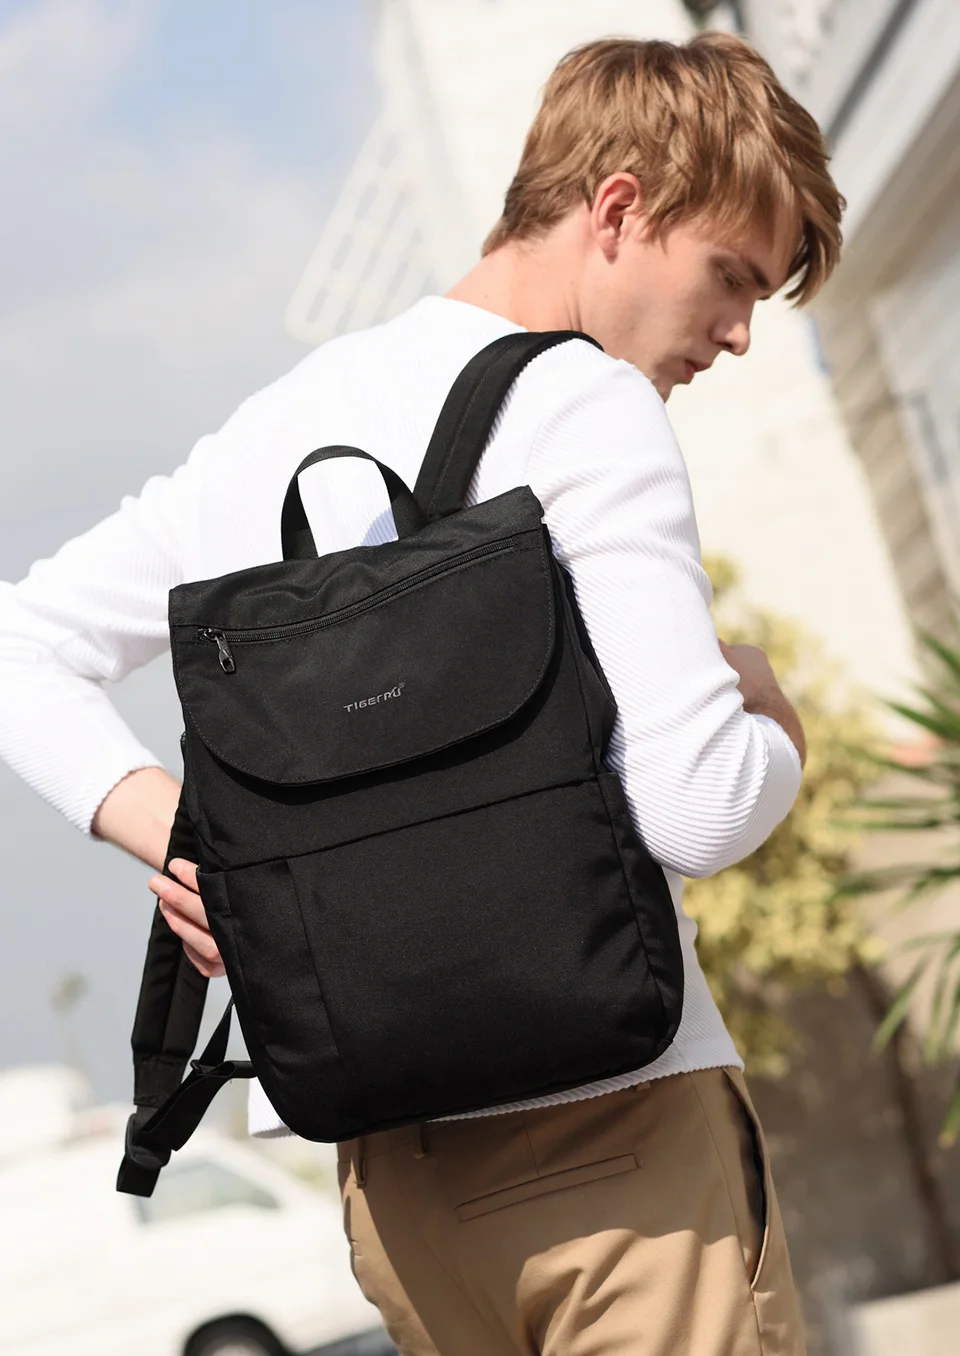 Tigernu New Fashion Рюкзак против обрастания Облегченный мужской женский рюкзак Школьные рюкзаки для подростков